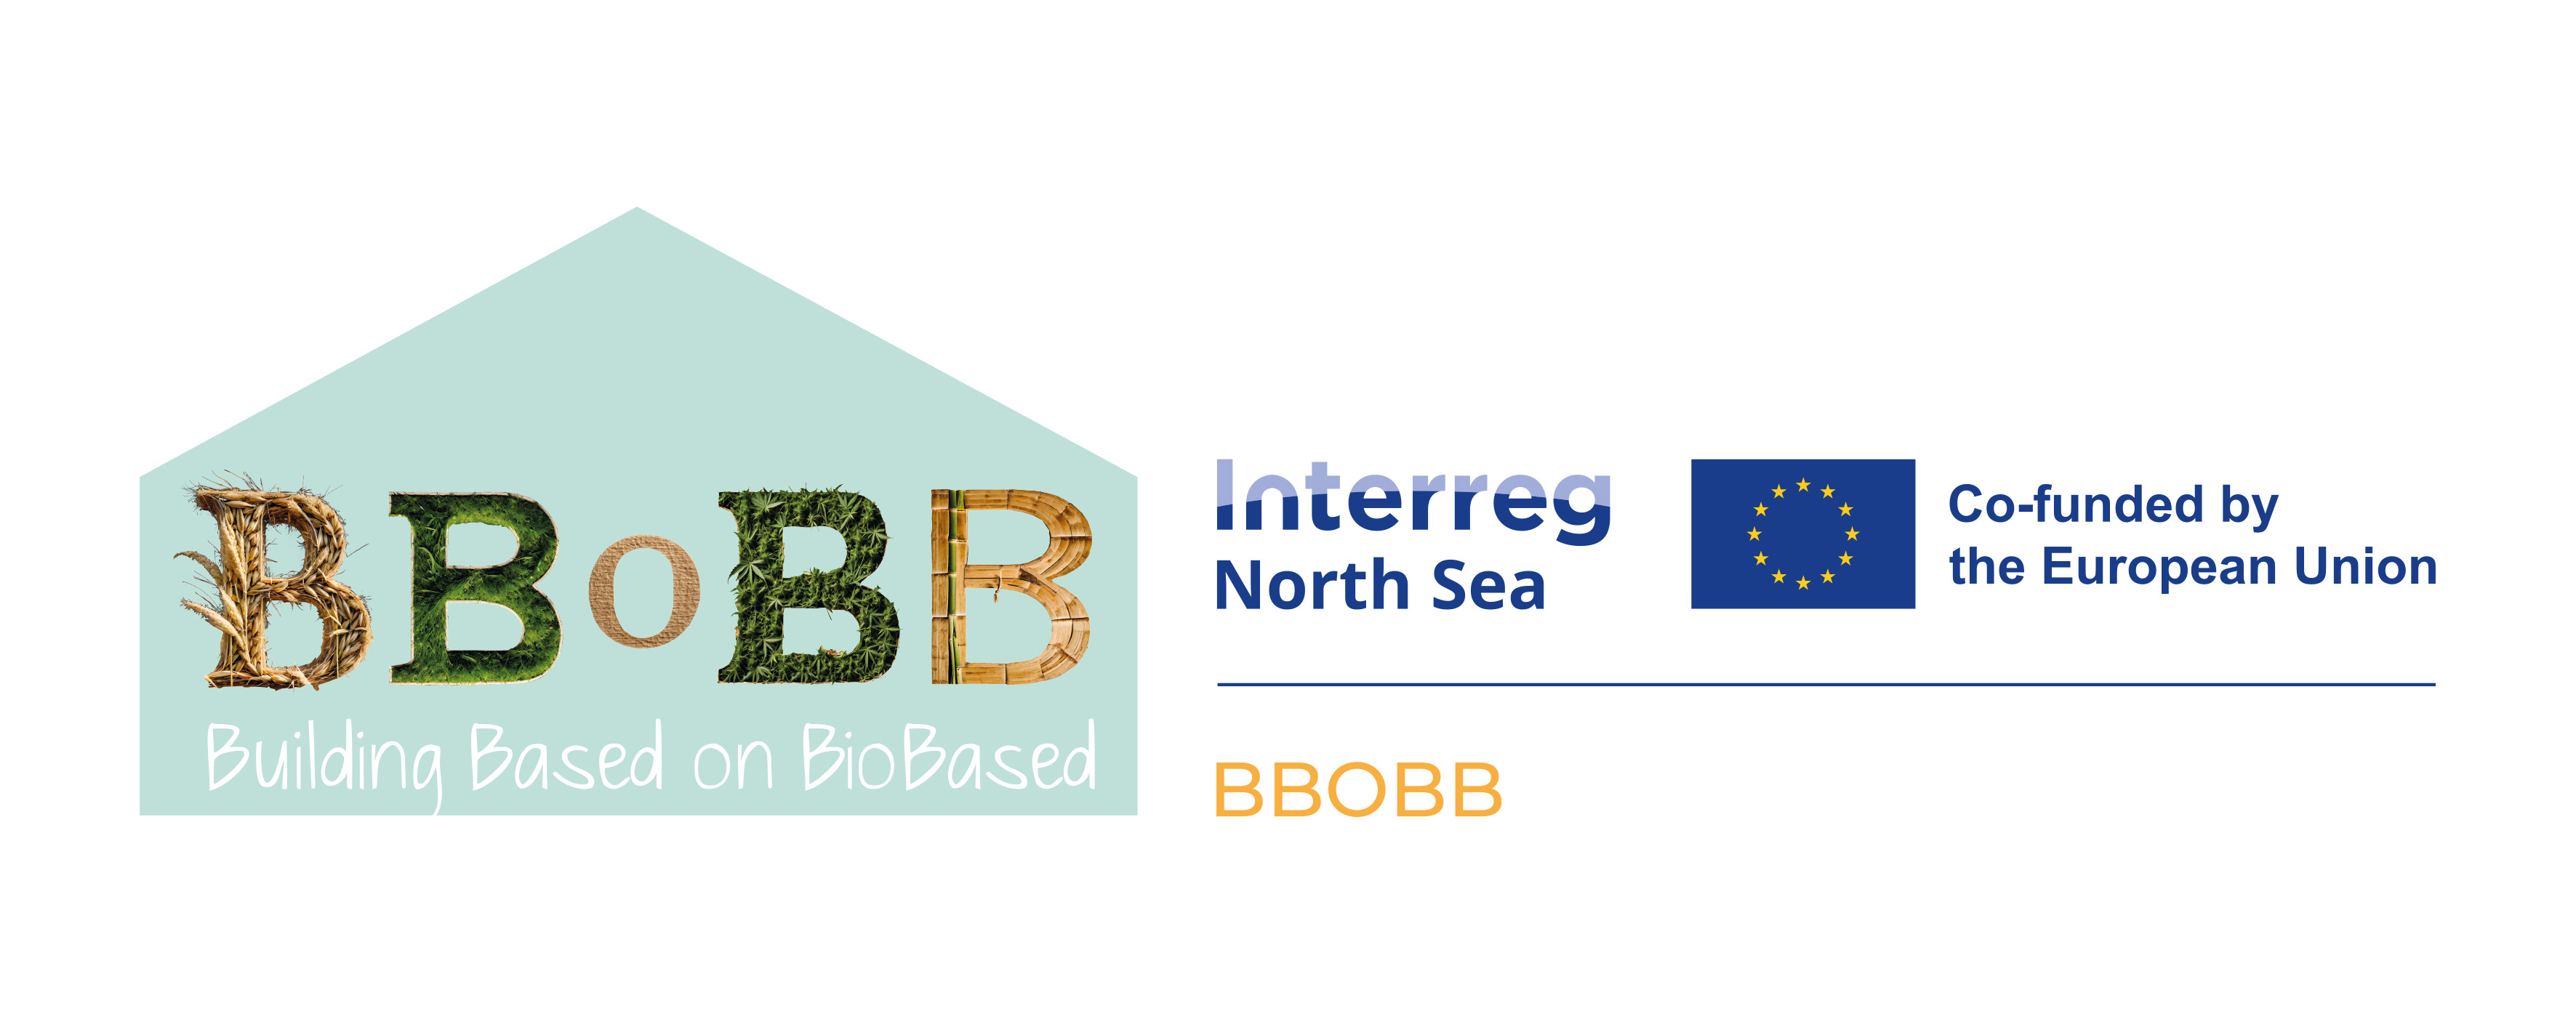 Logo waar een groen huisje op staat met daar de letter BBoBB en daaronder uitgeschreven Building Based on BioBased en daarnaast Interreg North sea met europees vlaggetje